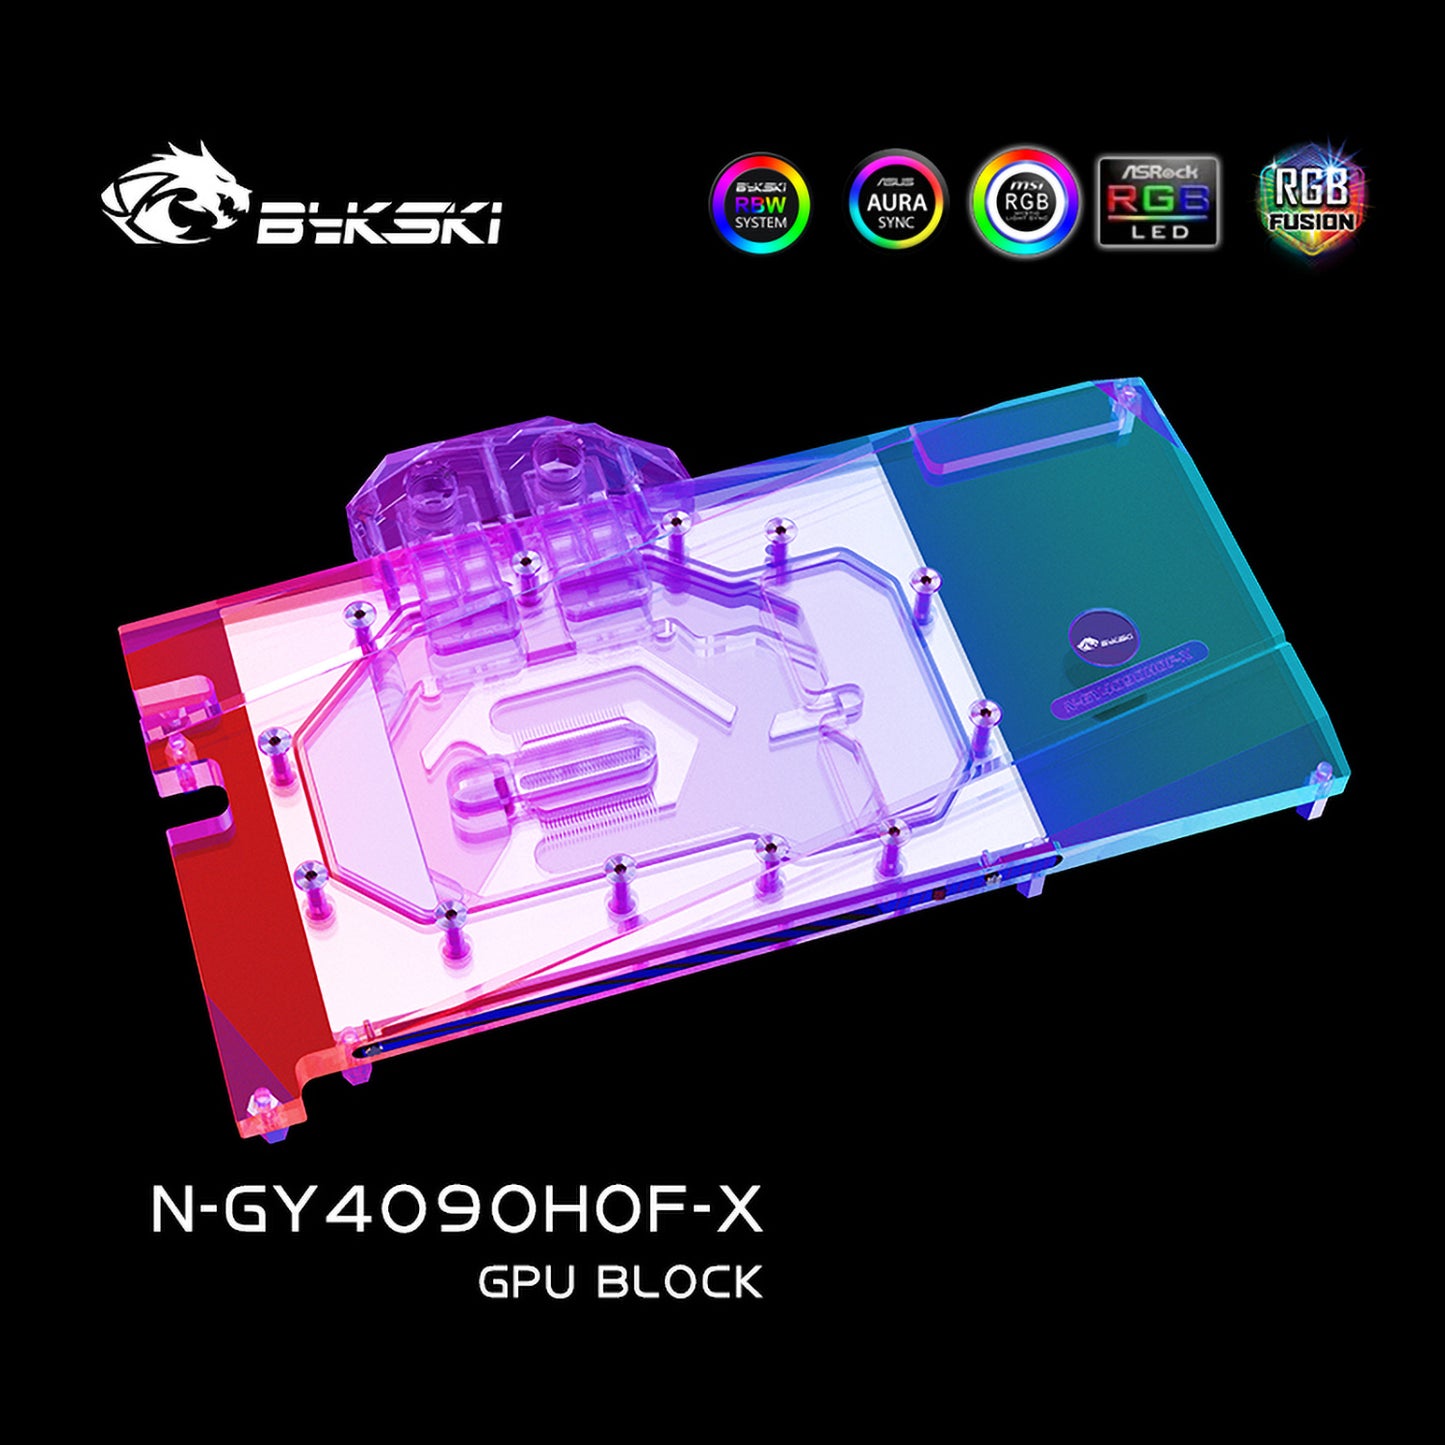 Bloc d'eau GPU Bykski pour Galax RTX 4090 HOF OC Lab Plus, couverture complète avec refroidisseur de refroidissement par eau pour PC de plaque arrière, N-IG3060TIMINI-X 